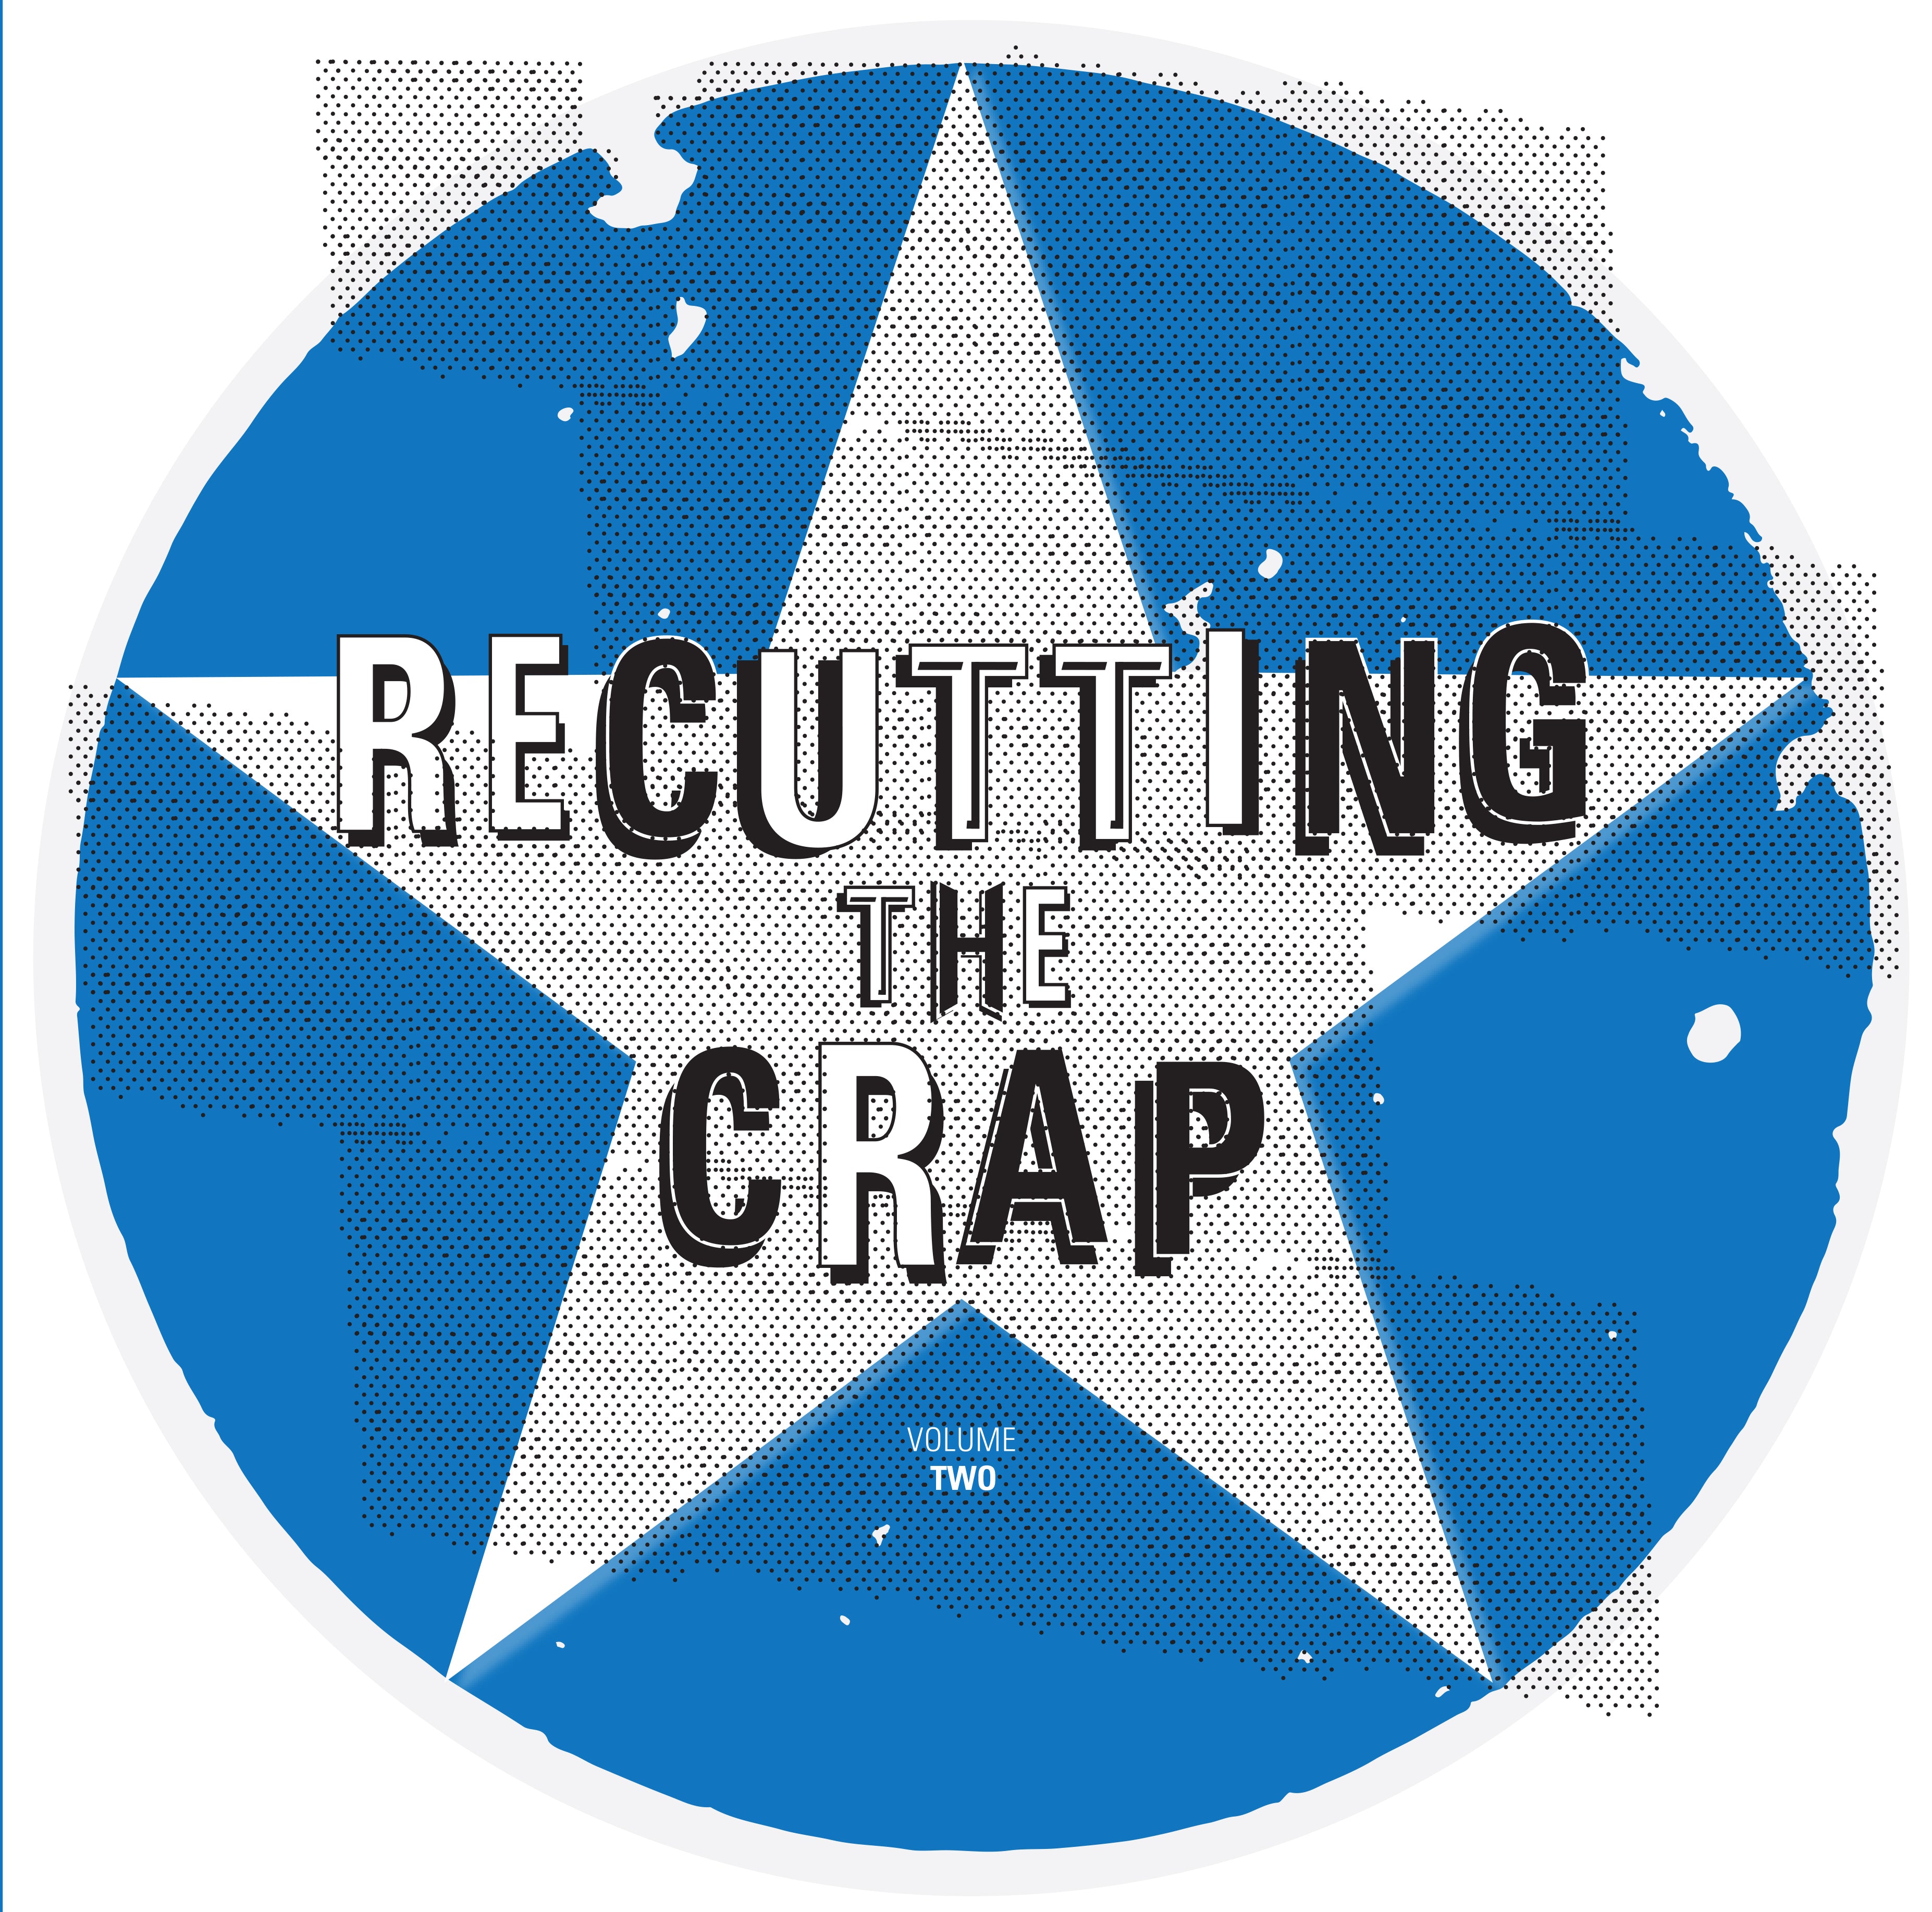 Various Artists - Recutting The Crap Vol 2